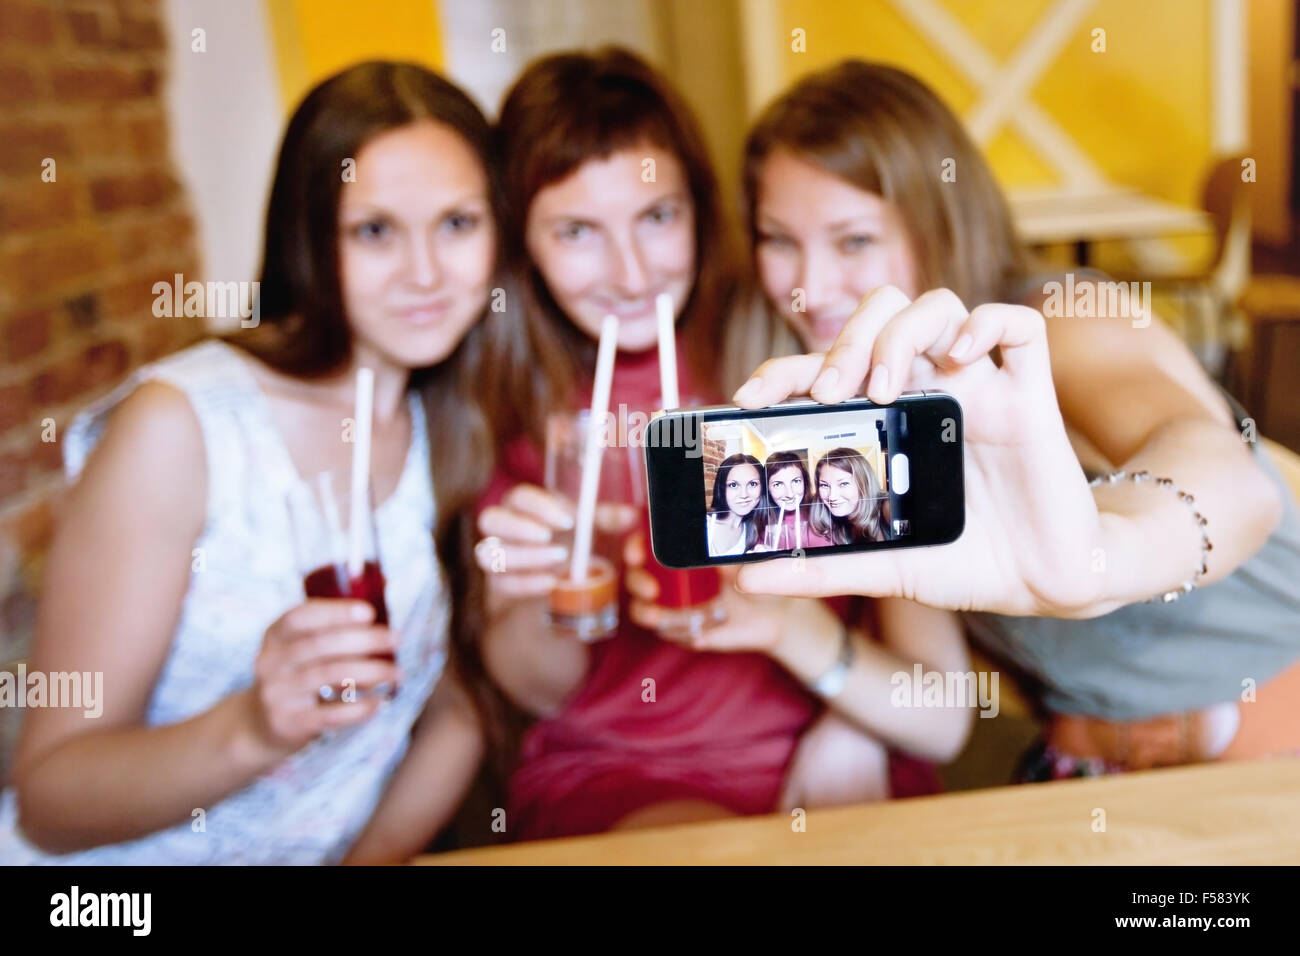 Aufnahme von sich selbst im Café während Party Freunde Stockfoto